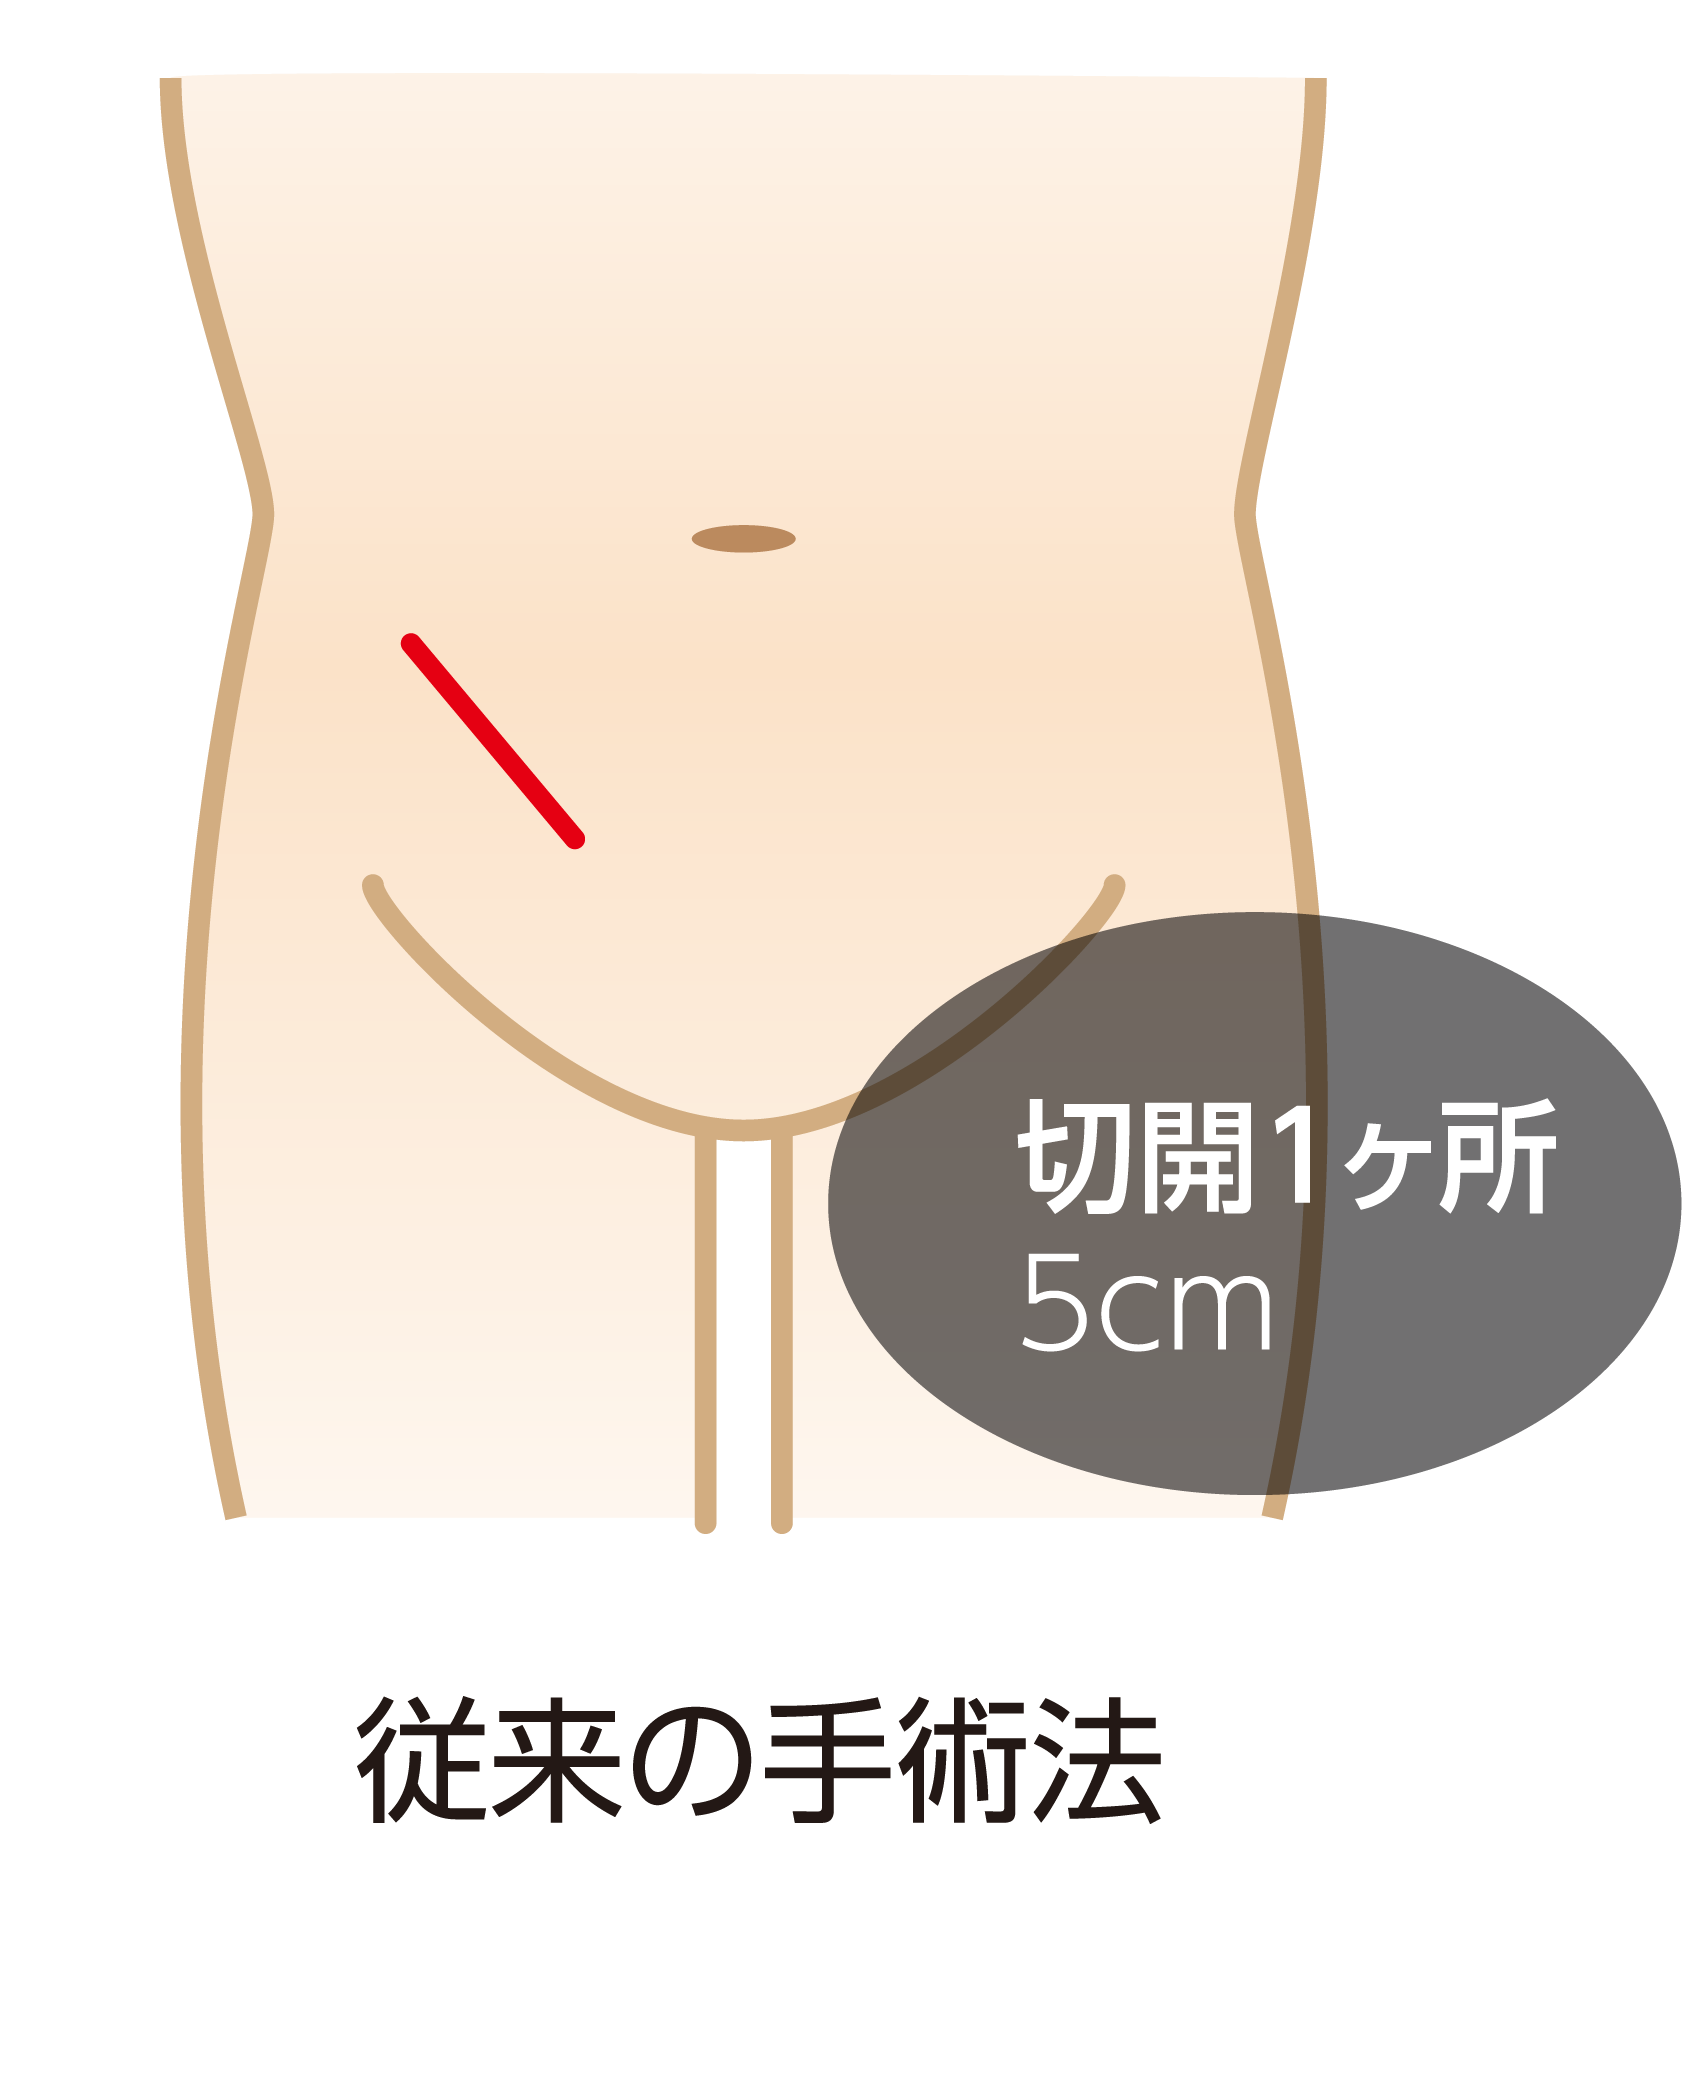 単孔式腹腔鏡下鼠径ヘルニア根治術(SILS-TEP法)